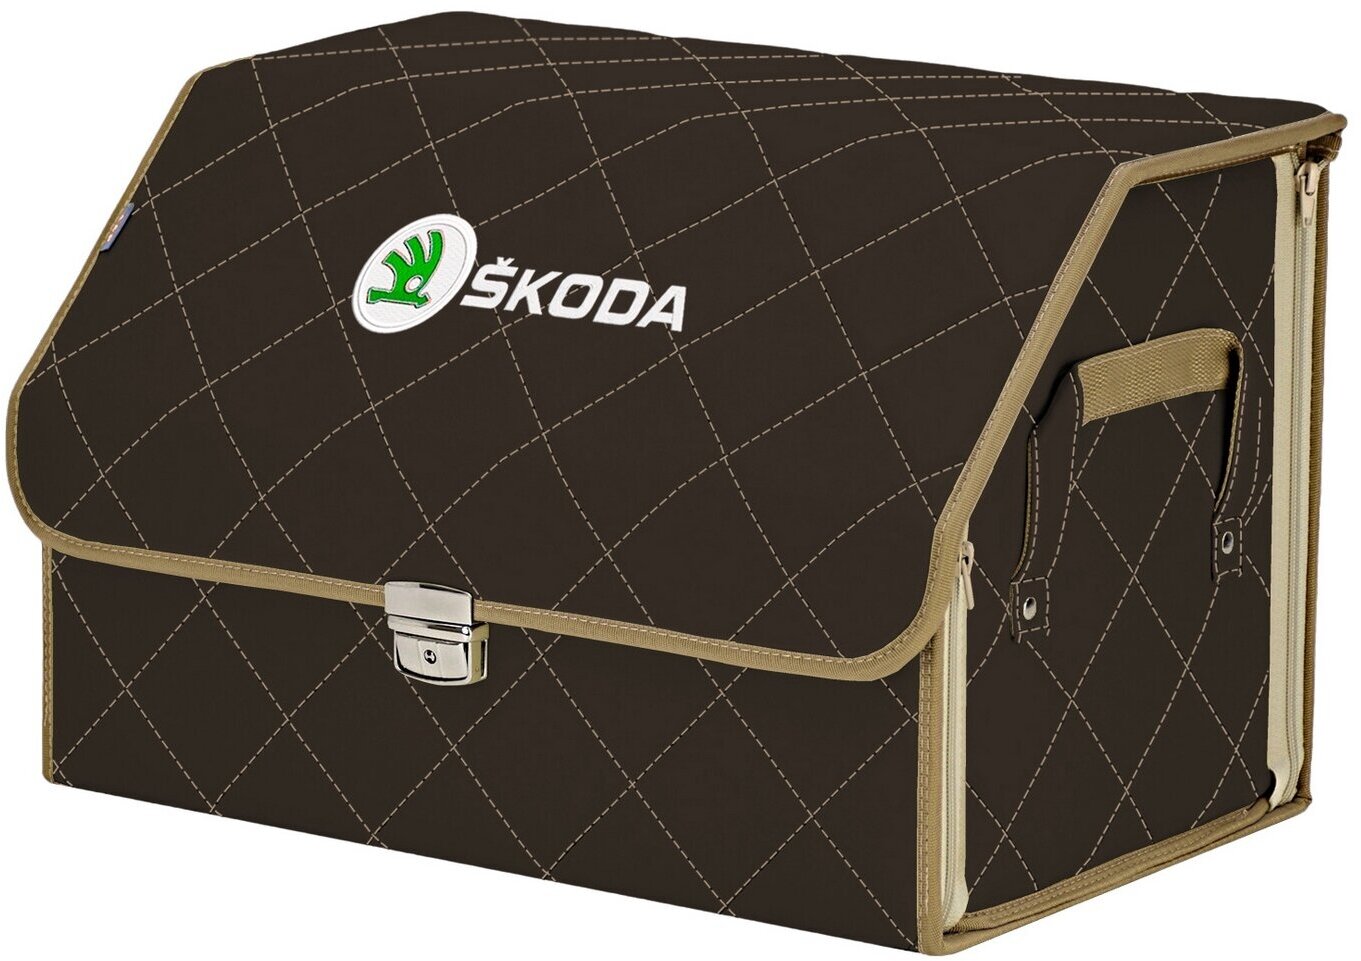 Органайзер-саквояж в багажник "Союз Премиум" (размер L). Цвет: коричневый с бежевой прострочкой Ромб и вышивкой Skoda (Шкода).